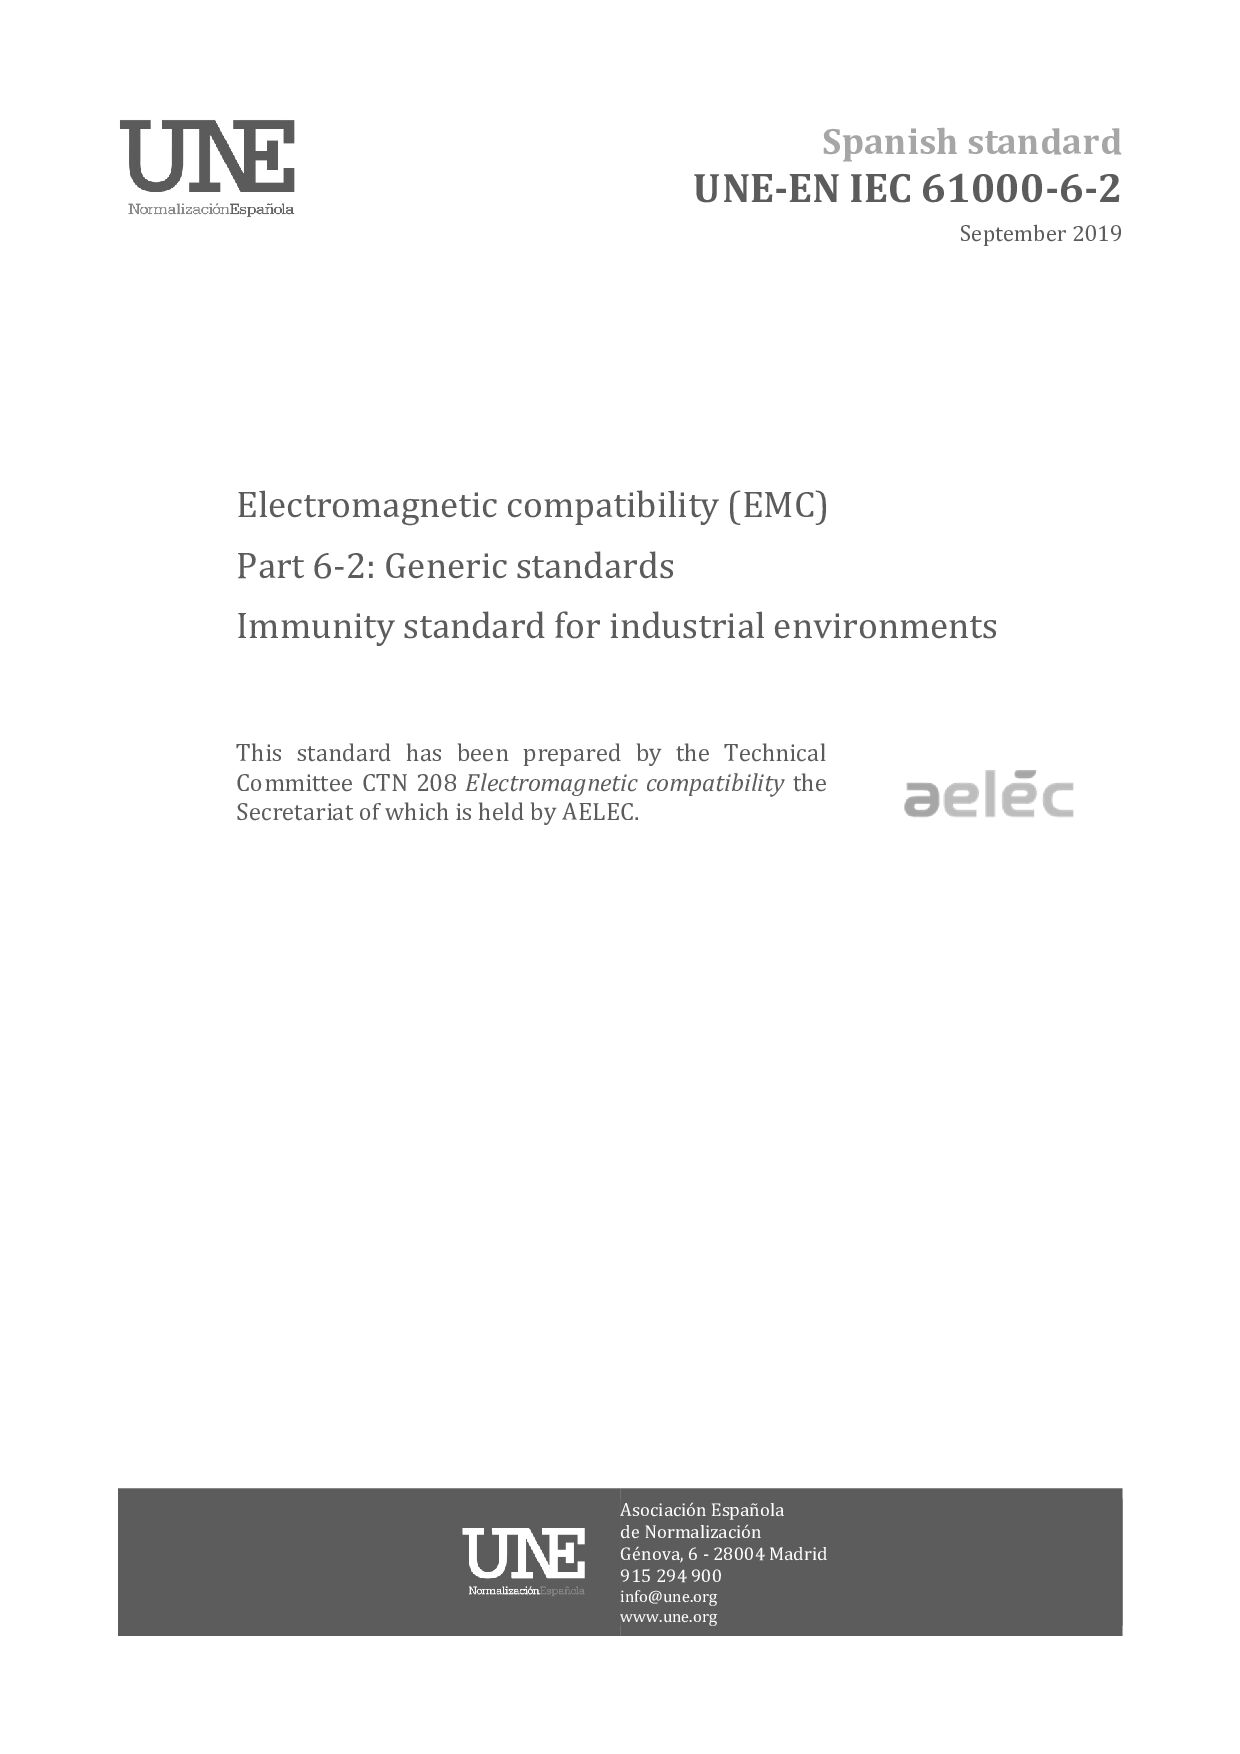 UNE-EN IEC 61000-6-2:2019